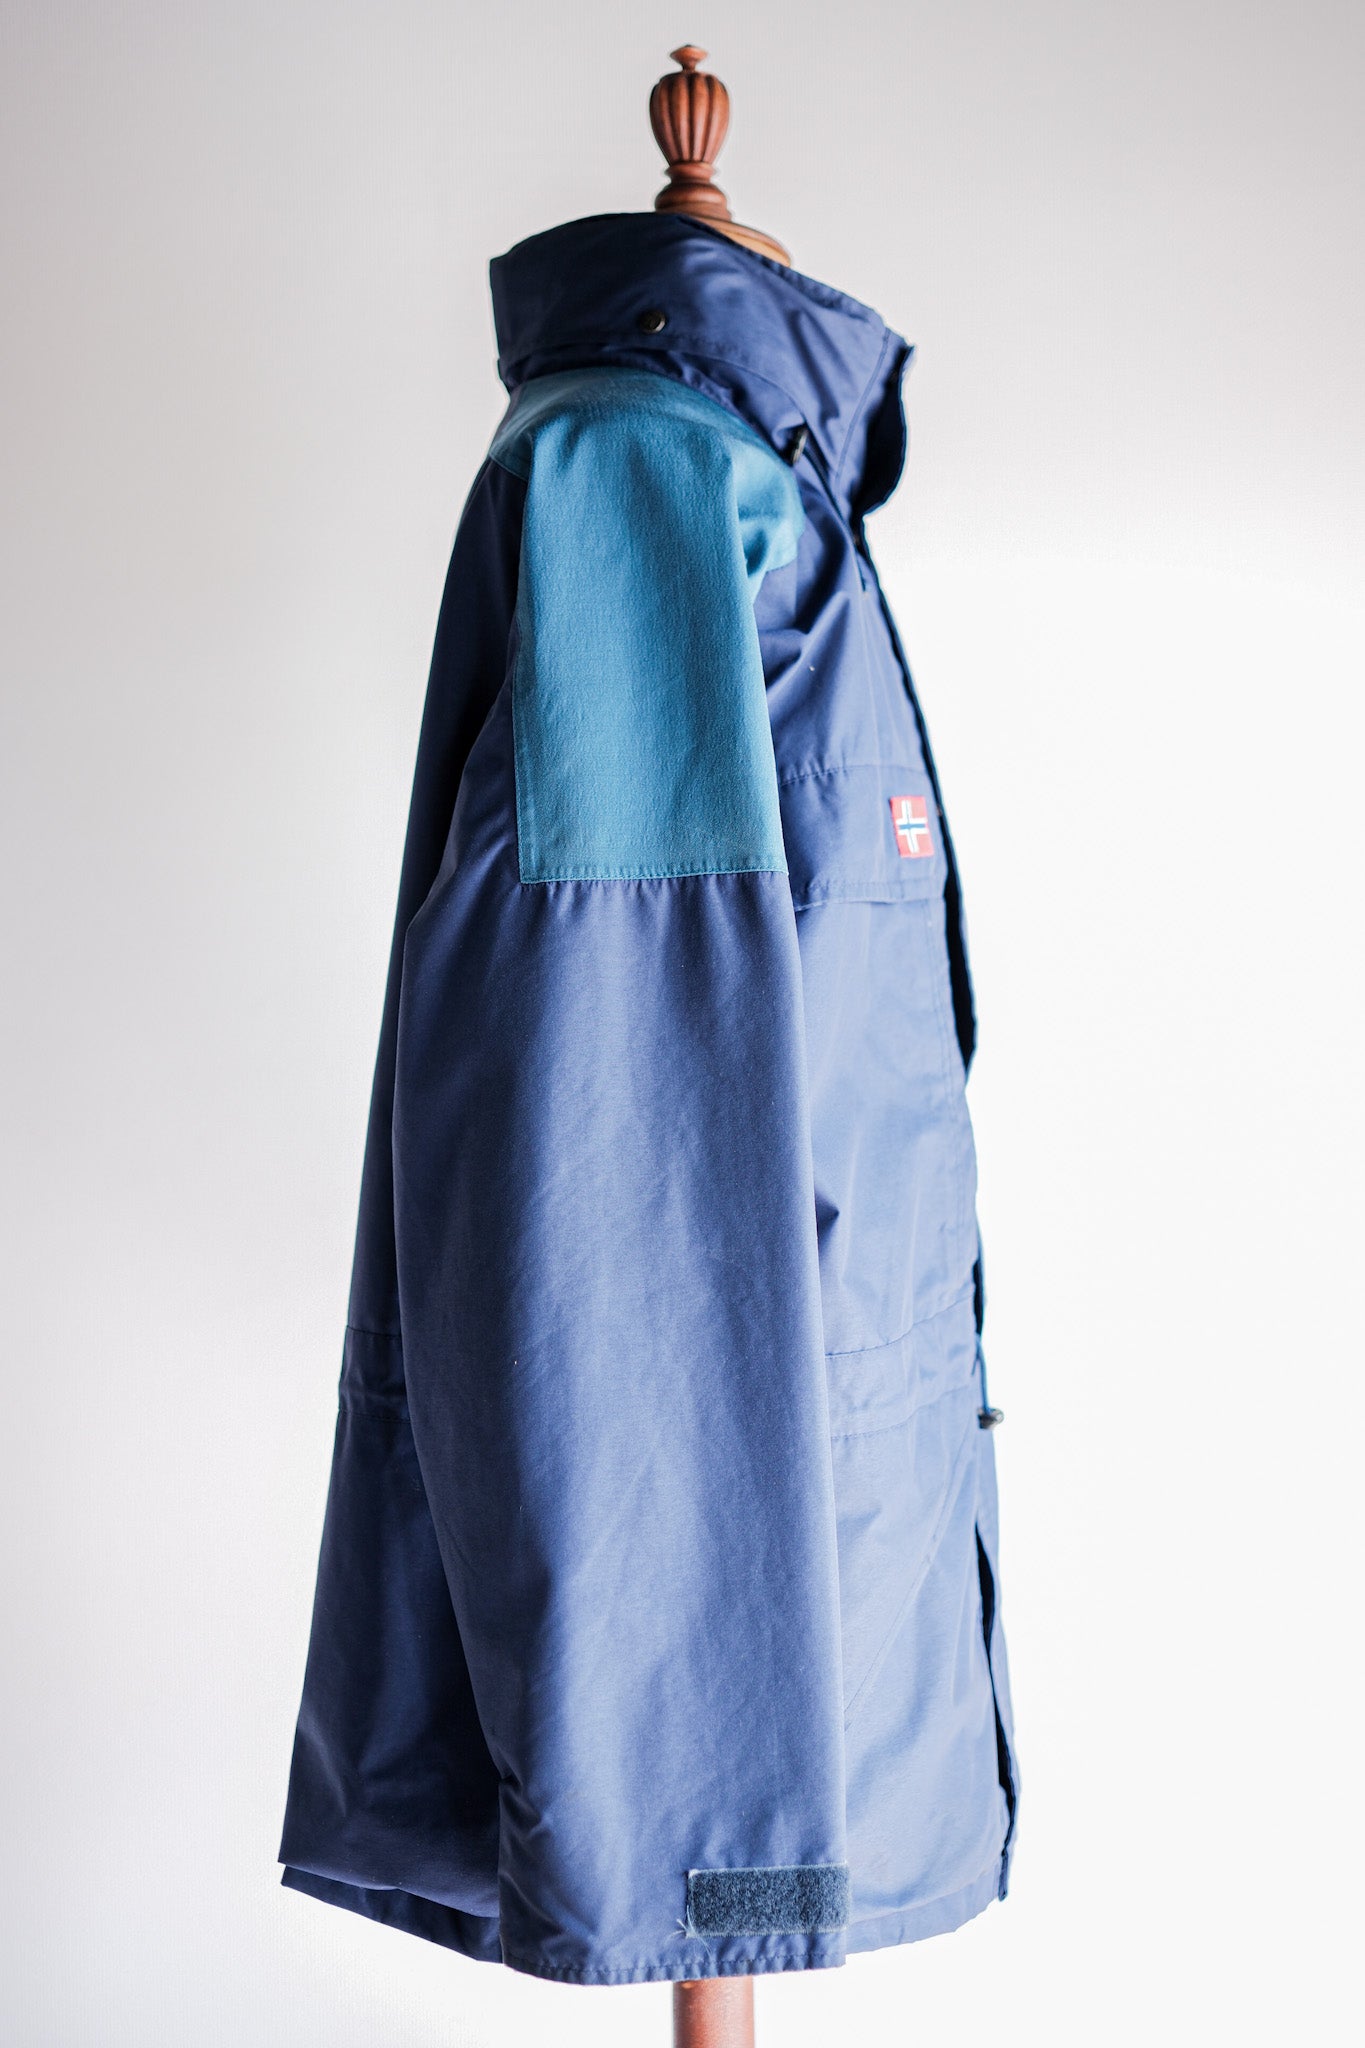 【~90's】Vintage Berghaus GORE-TEX Hiking Jacket Size.Large